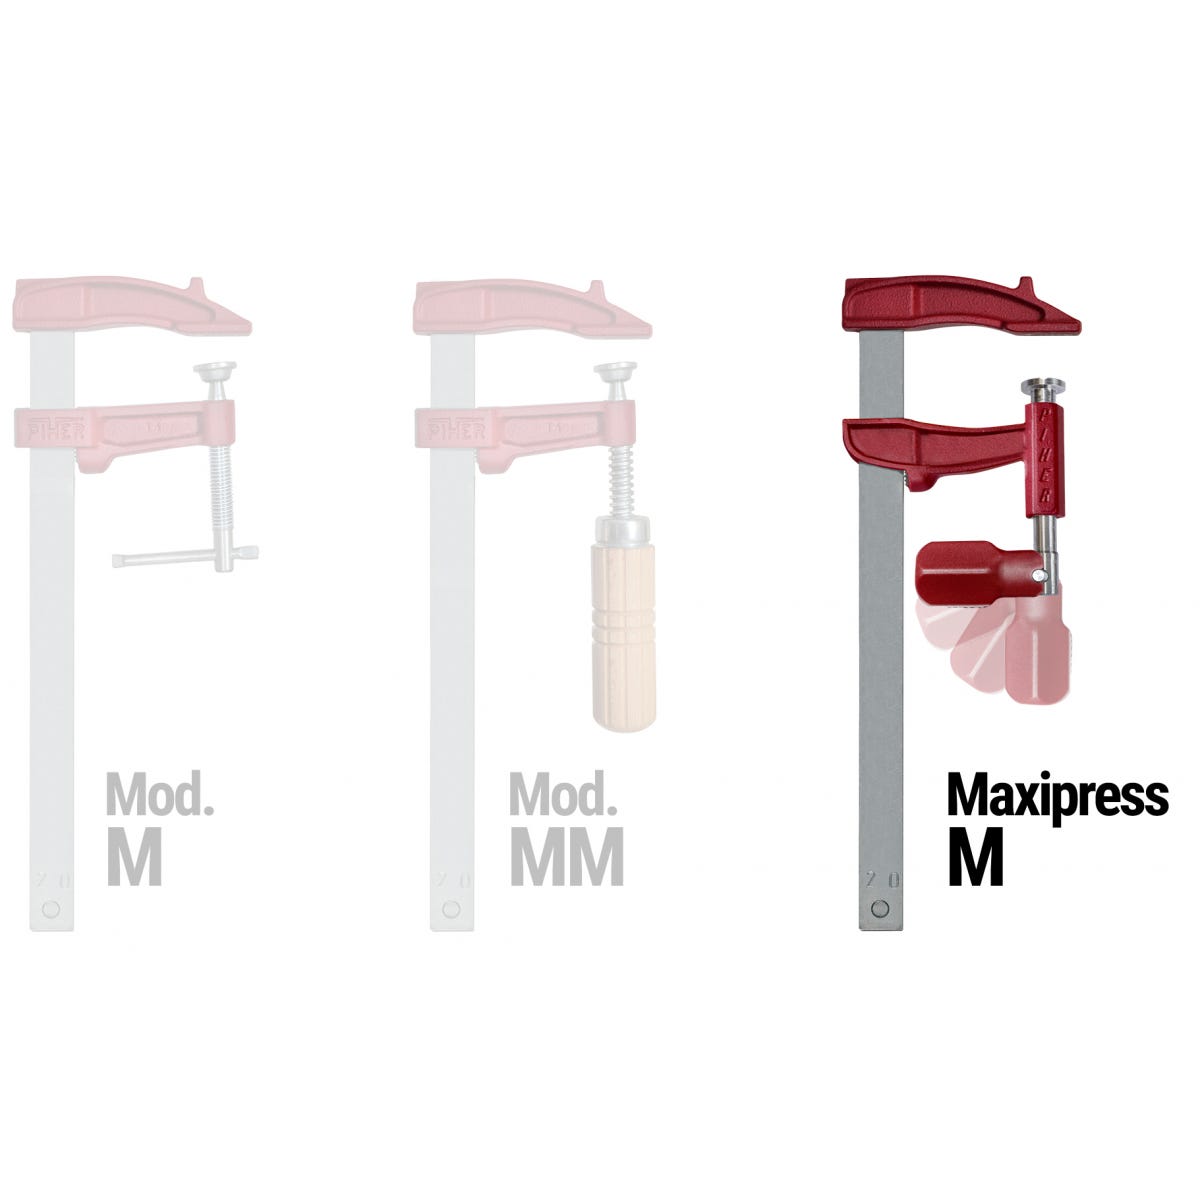 Serre-joint Maxipress modèle M Capacité de serrage : 30 cm 3